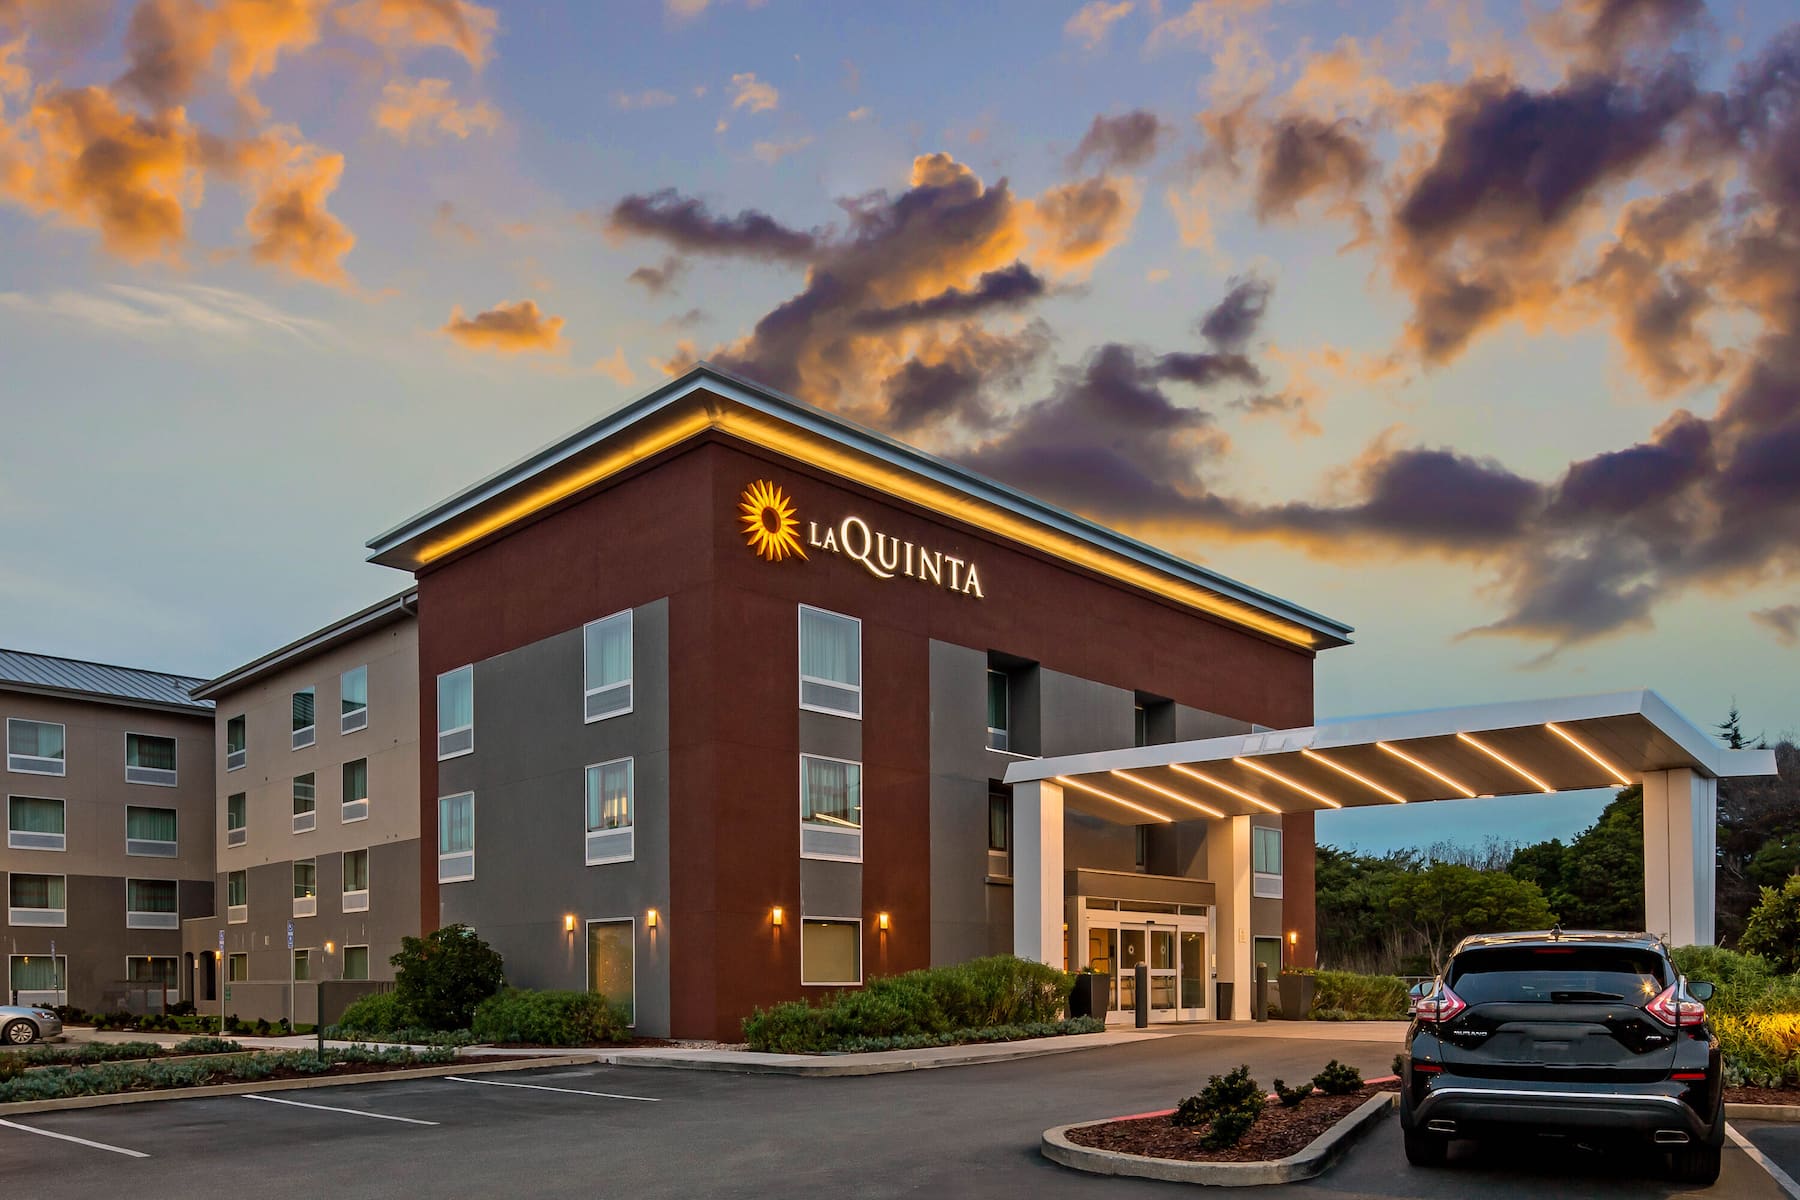 La Quinta Inn & Suites by Wyndham
San Francisco Airport N